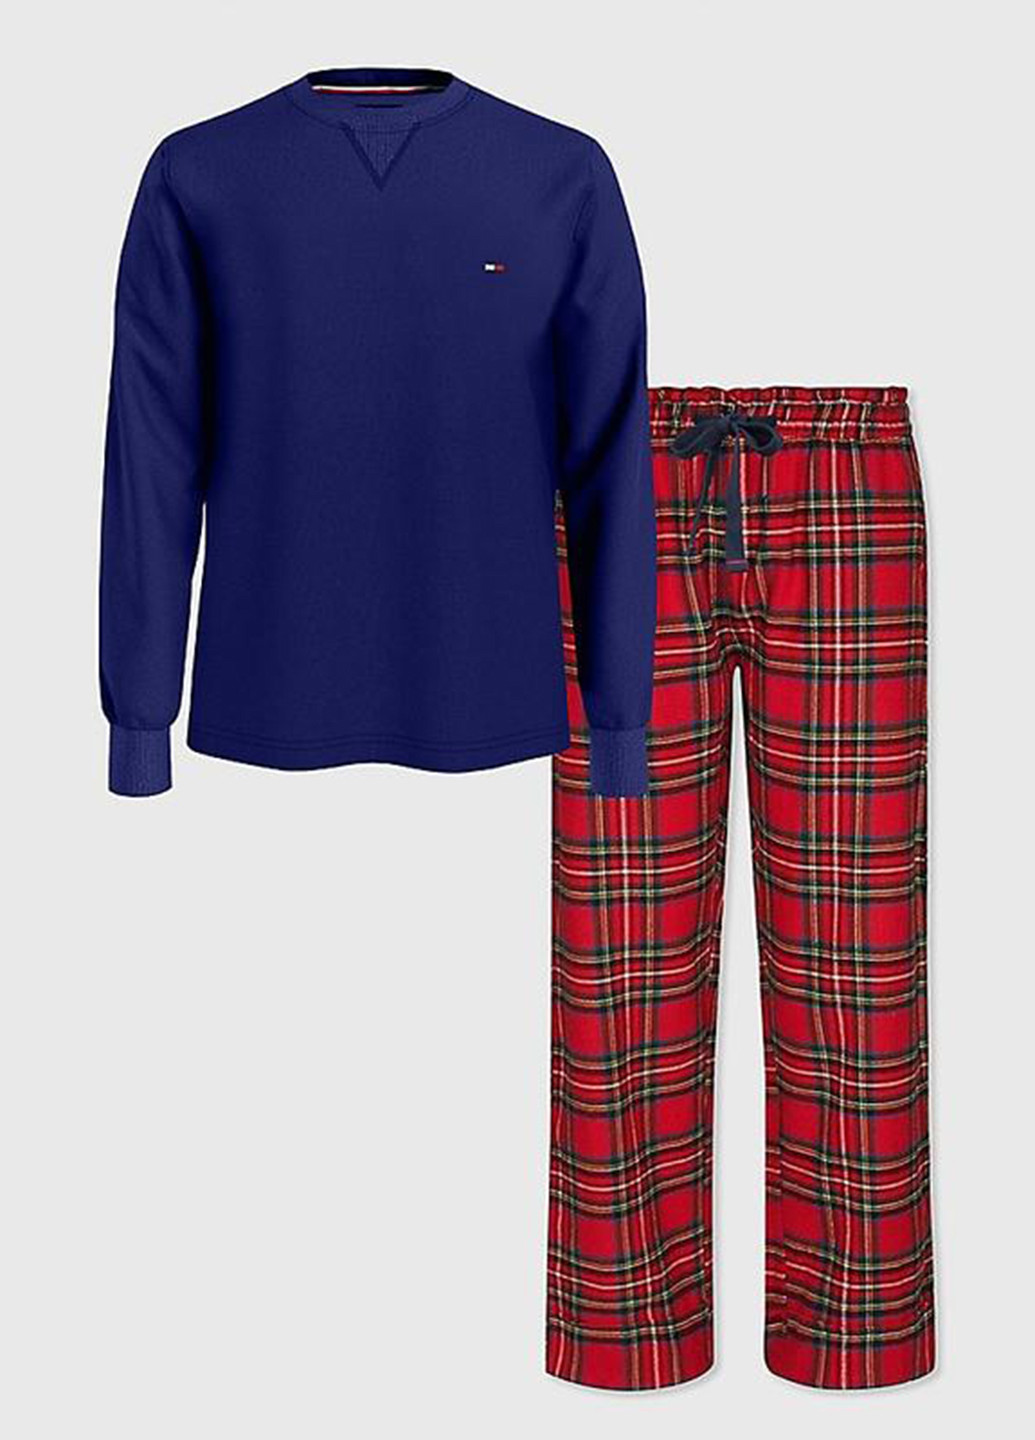 Пижама (лонгслив, брюки) Tommy Hilfiger лонгслив + брюки клетка комбинированная домашняя хлопок, полиэстер